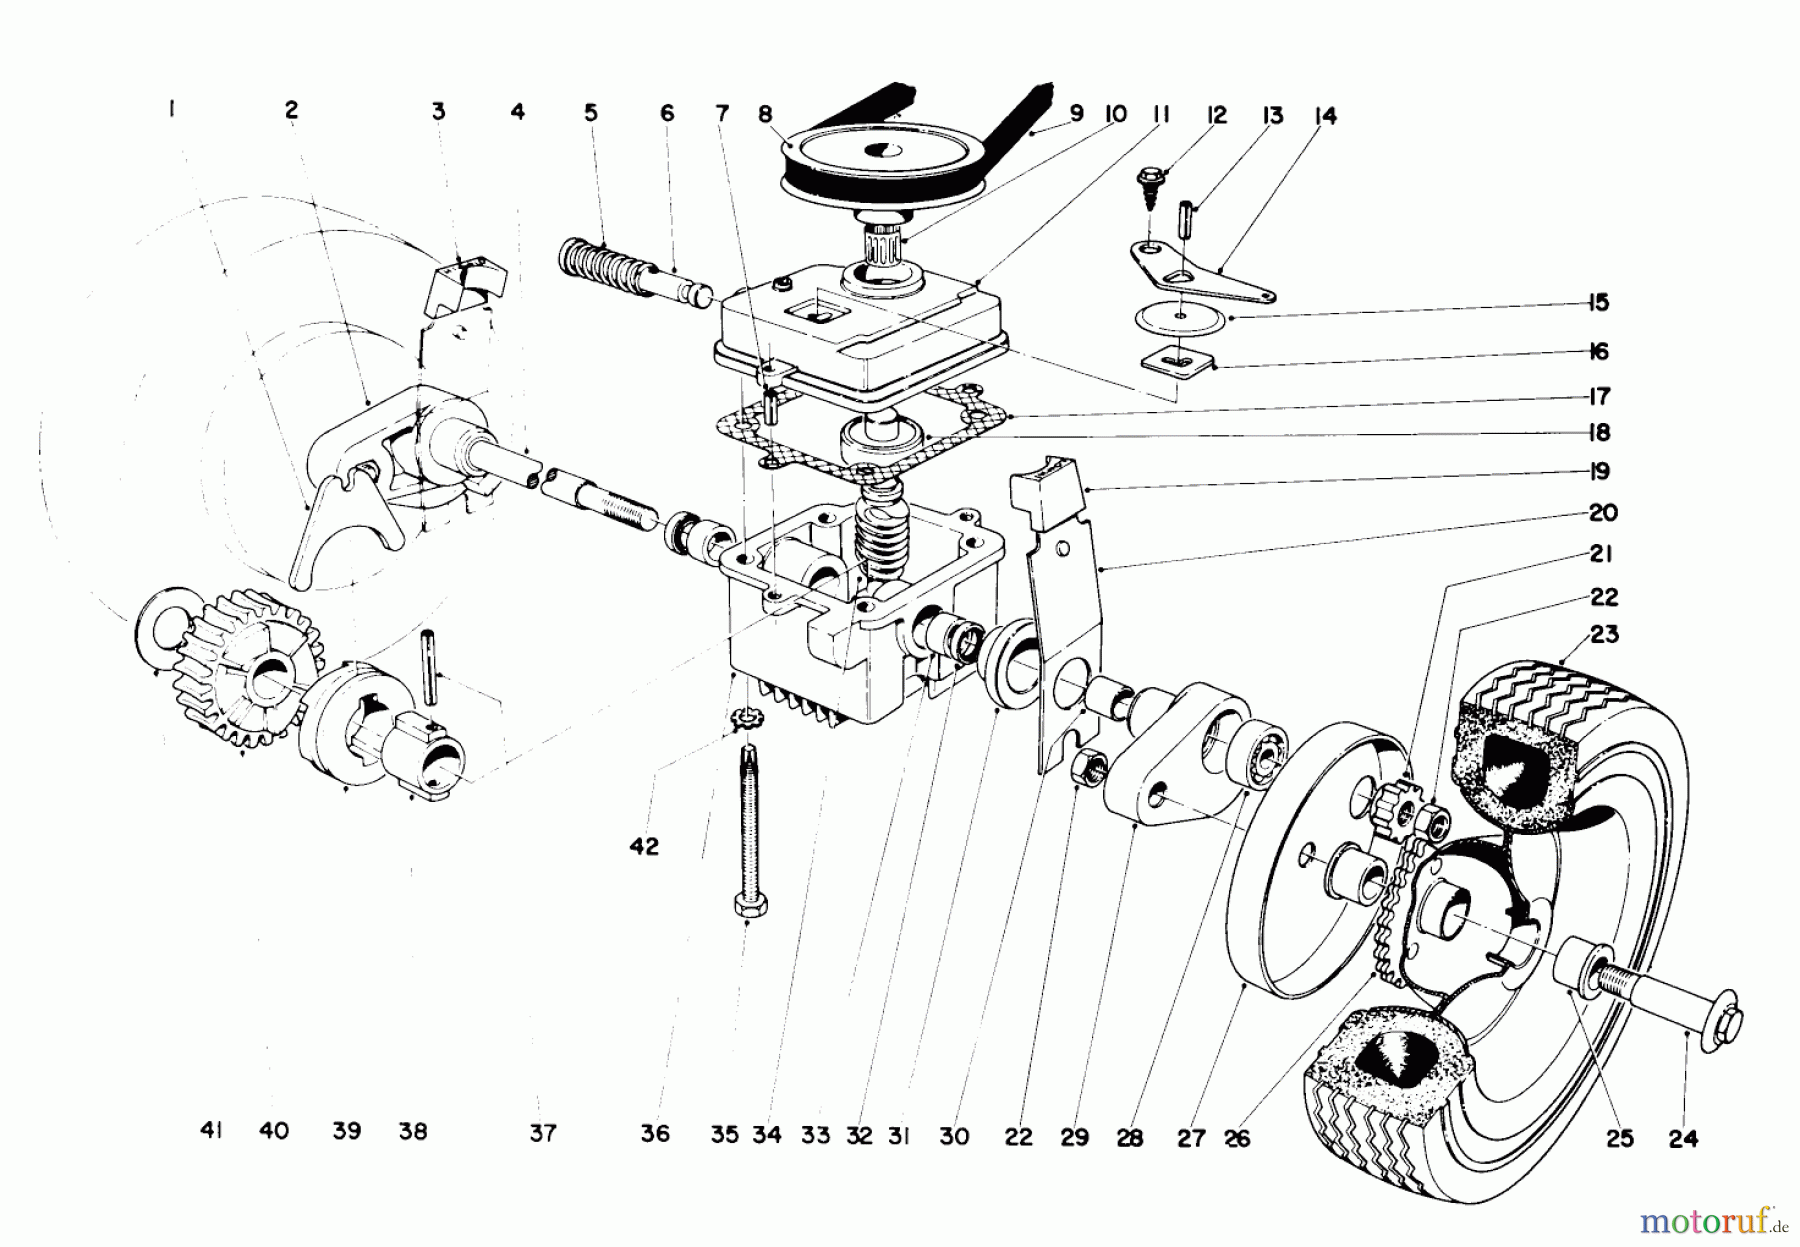  Toro Neu Mowers, Walk-Behind Seite 1 18400 - Toro Whirlwind Lawnmower, 1971 (1000001-1999999) 21